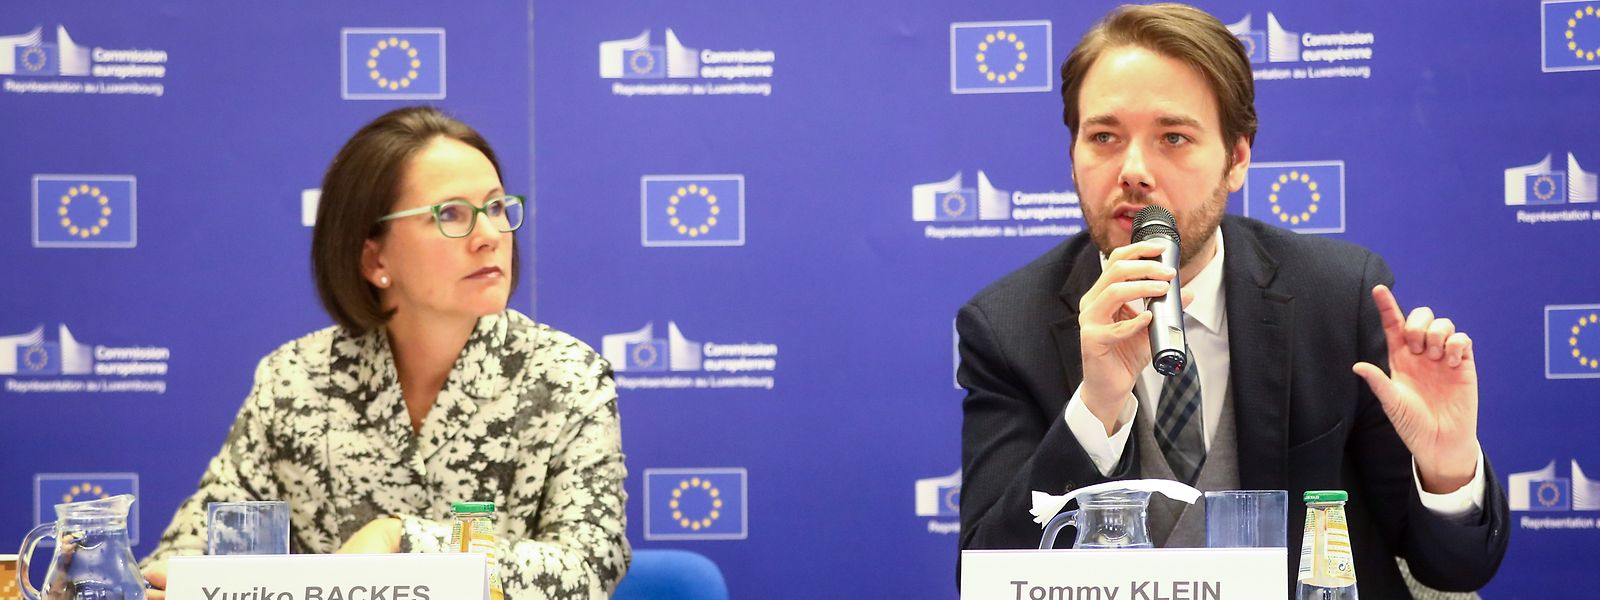 Yuriko Backes, cheffe de la Représentation de la Commission européenne au Luxembourg, et Tommy Klein, directeur service clients de TNS Ilres, ont présenté le premier Eurobaromètre de cette année.